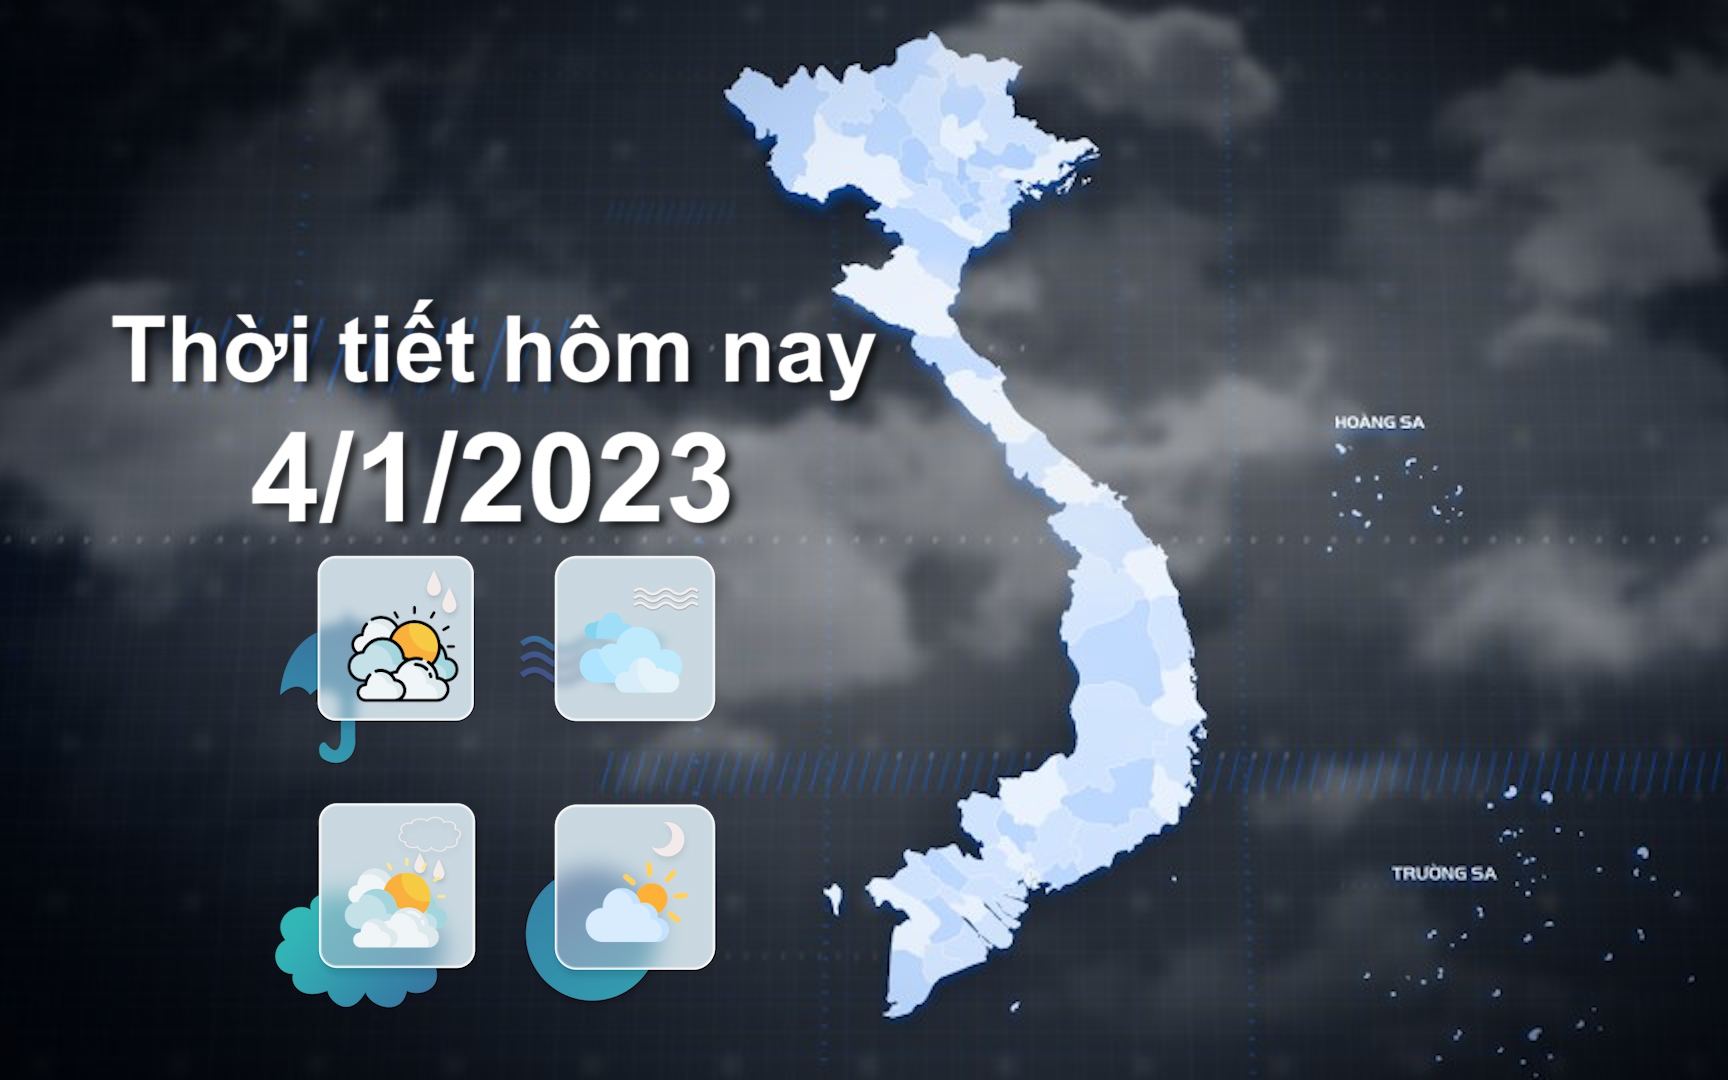 Thời tiết hôm nay 4/1/2023: Bắc Bộ trời rét, Nam Trung Bộ có mưa to